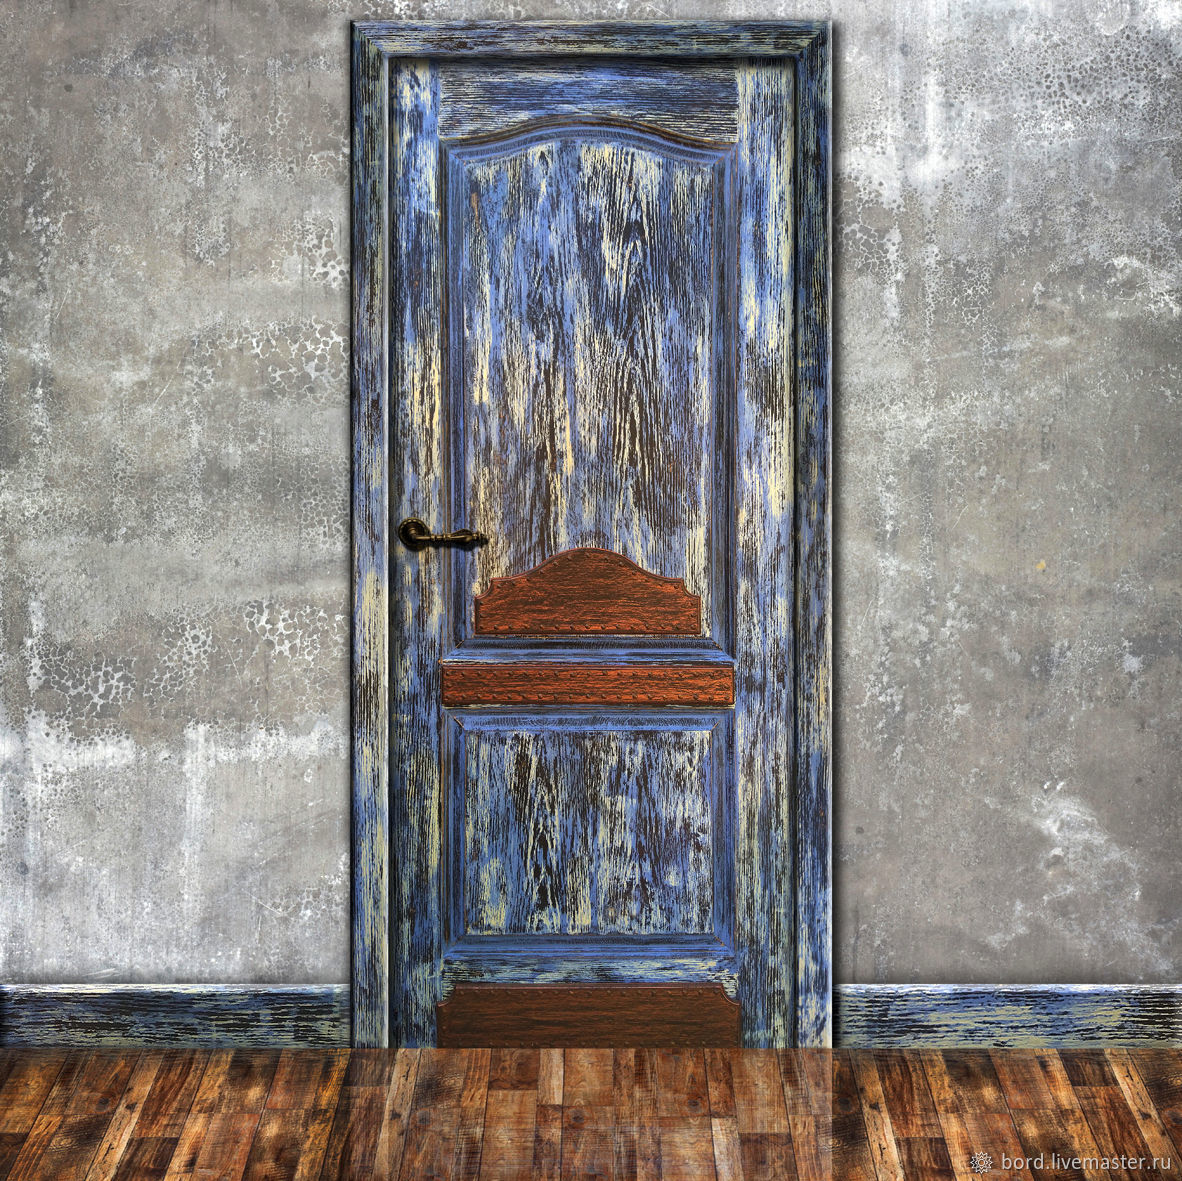 Retro doors. Старая деревянная дверь. Двери в стиле лофт. Деревянные двери в стиле лофт. Состаренные двери.